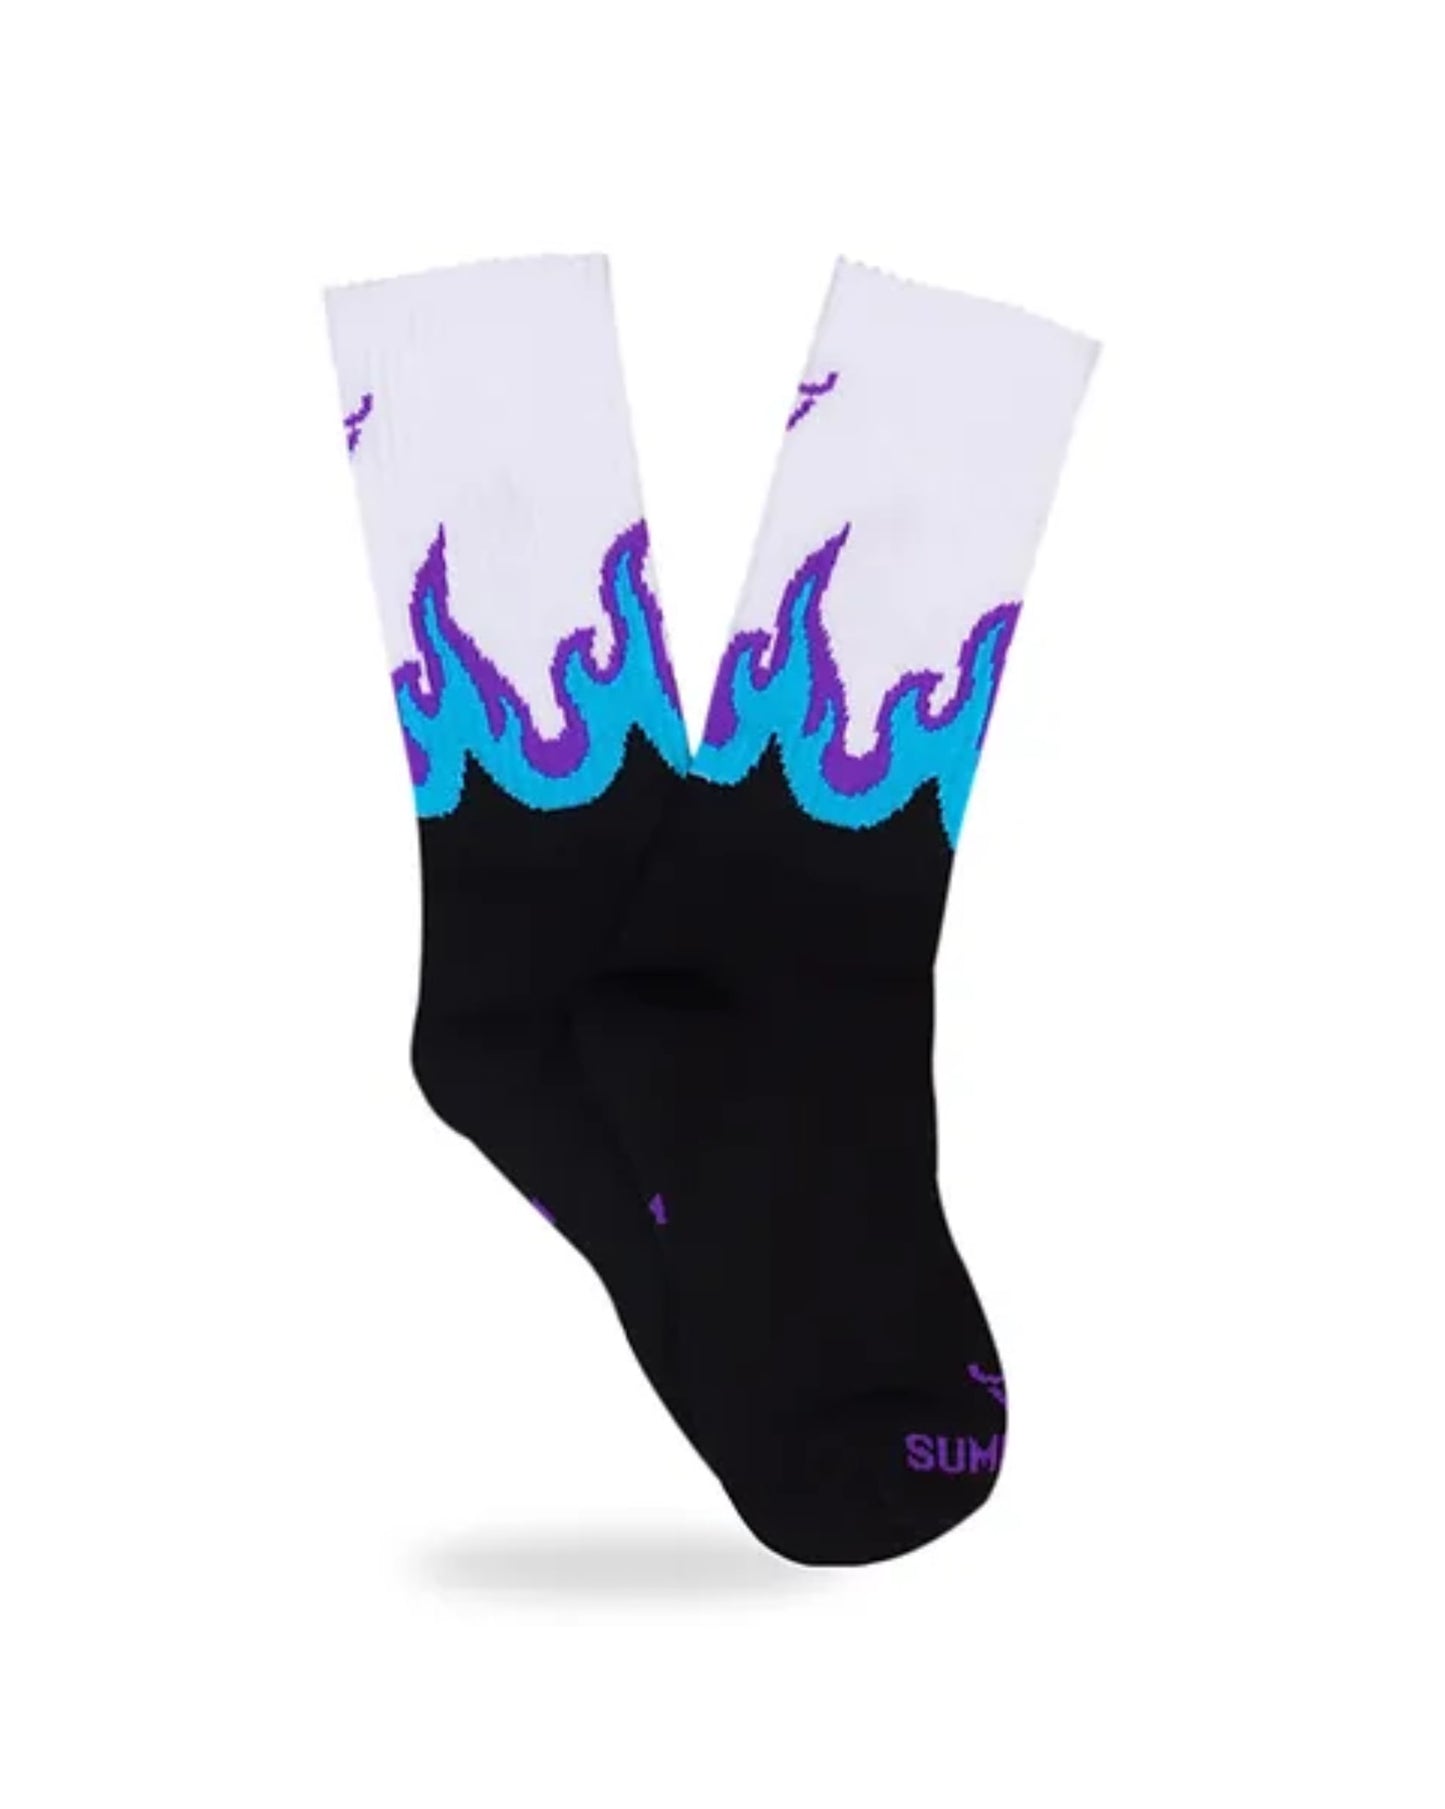 Flame sock